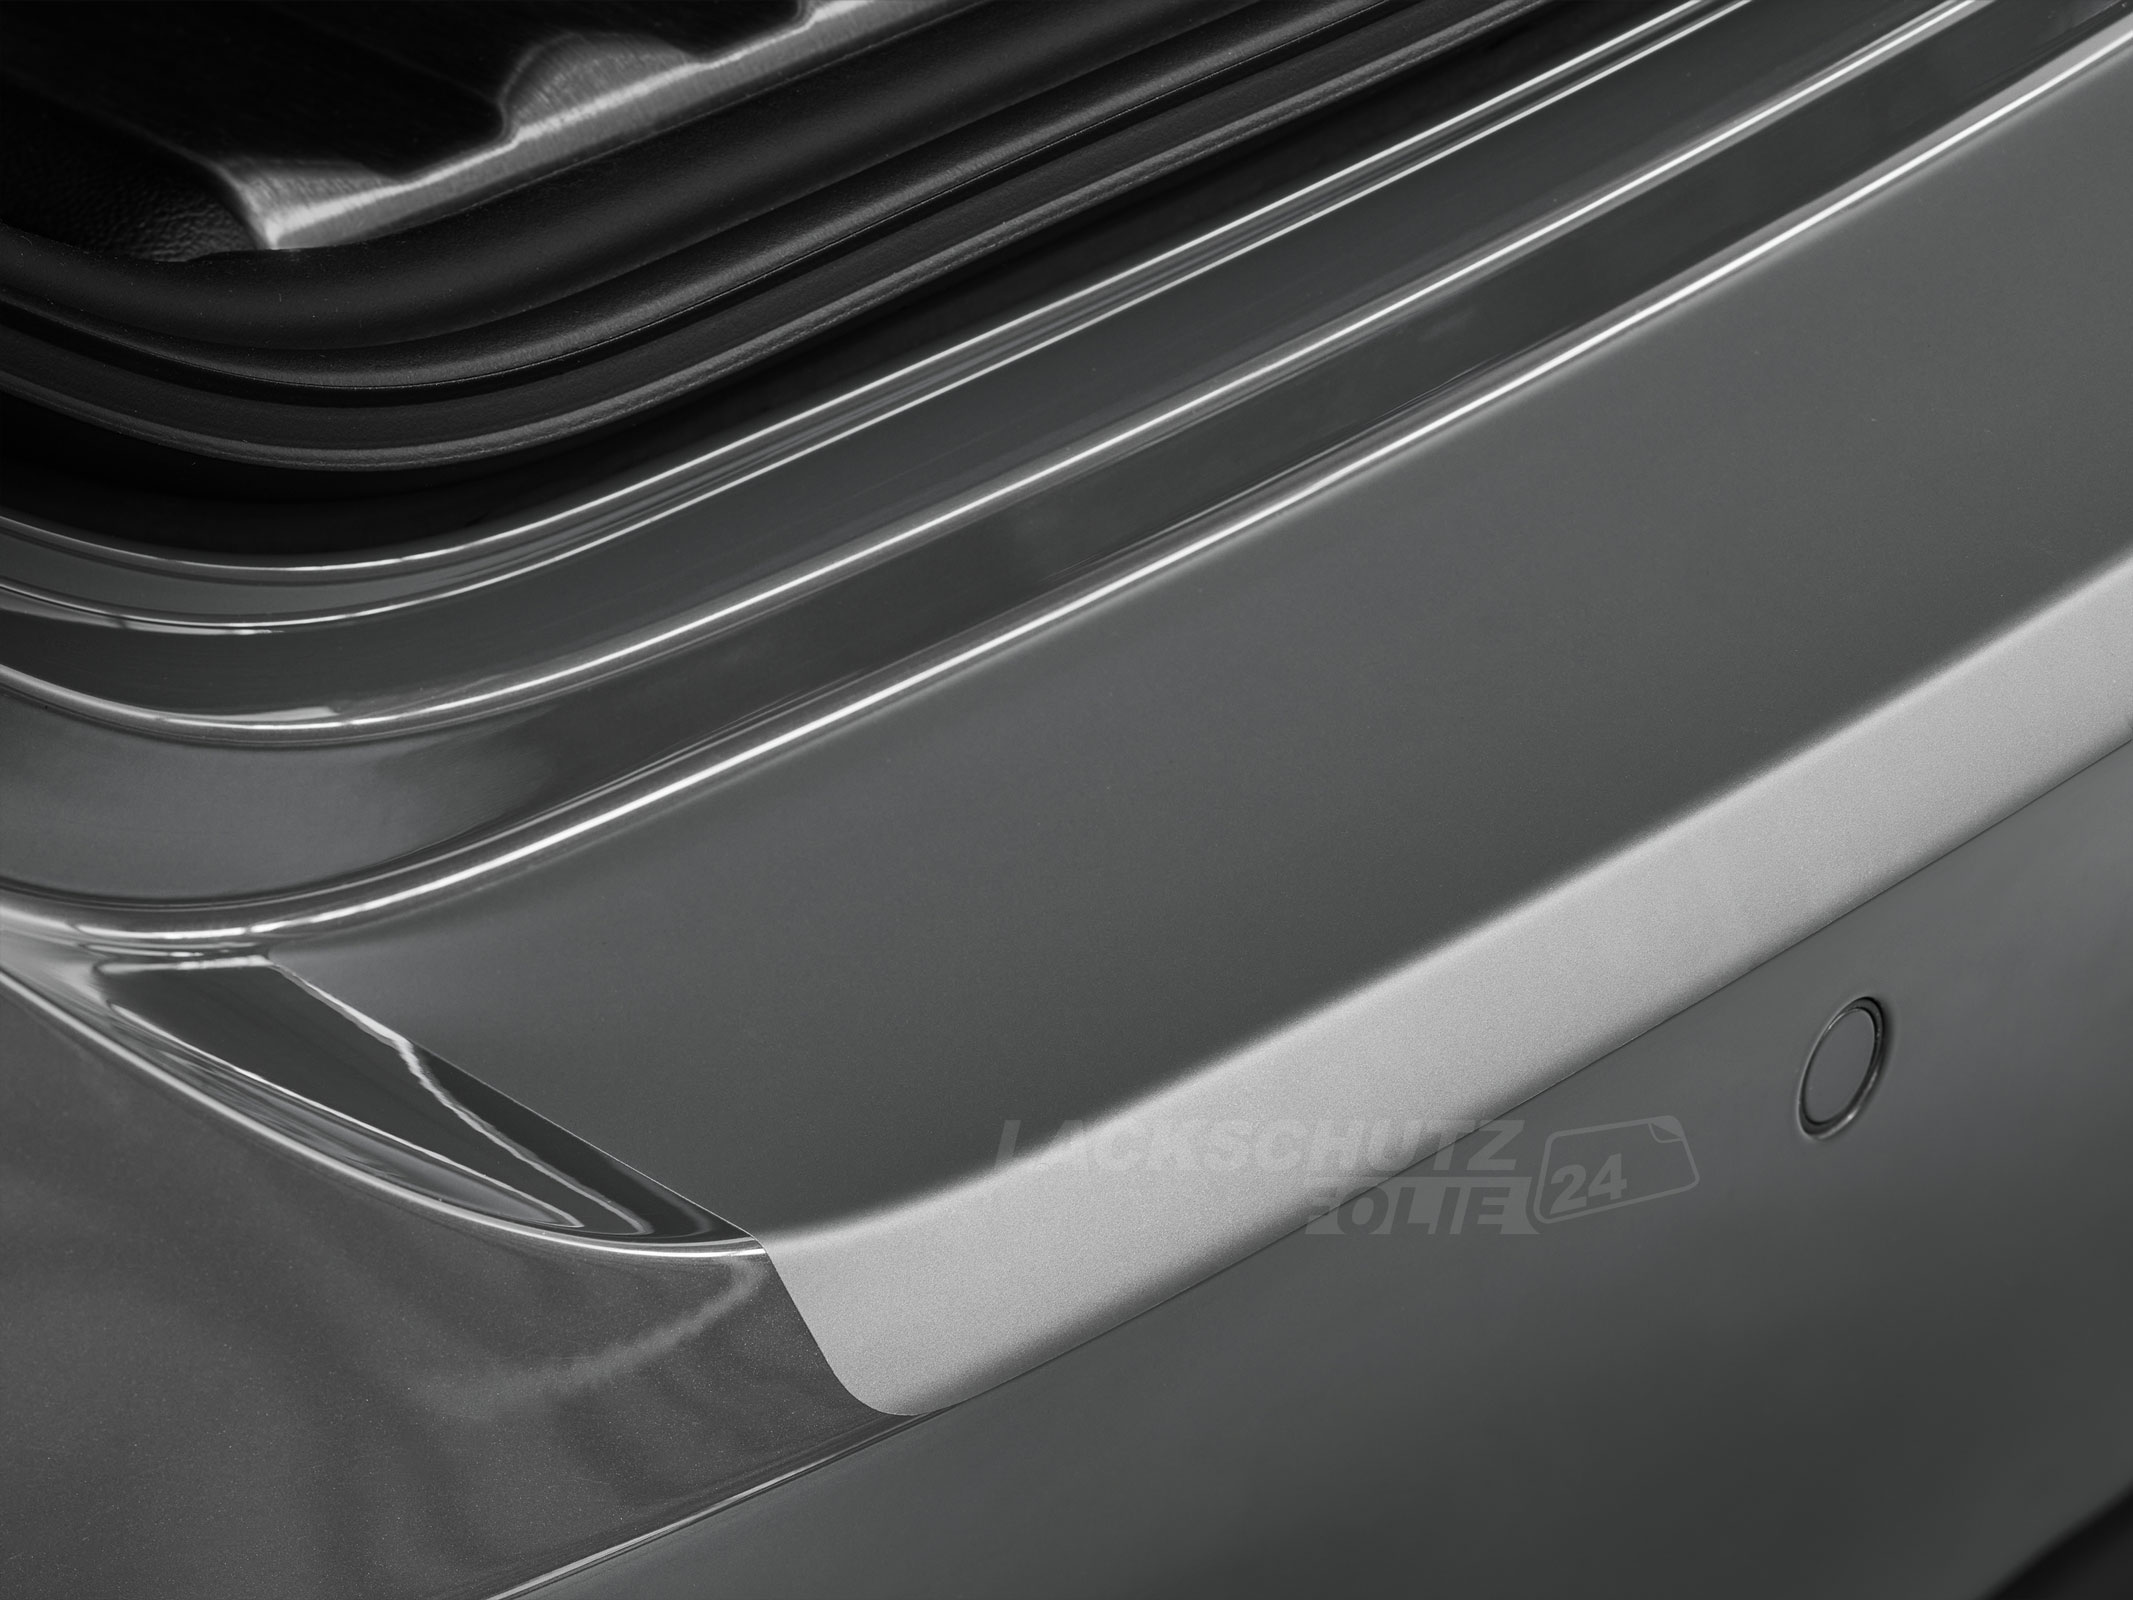 Ladekantenschutzfolie - Transparent Glatt MATT für Toyota Auris Typ E150, BJ 03/2007-2012